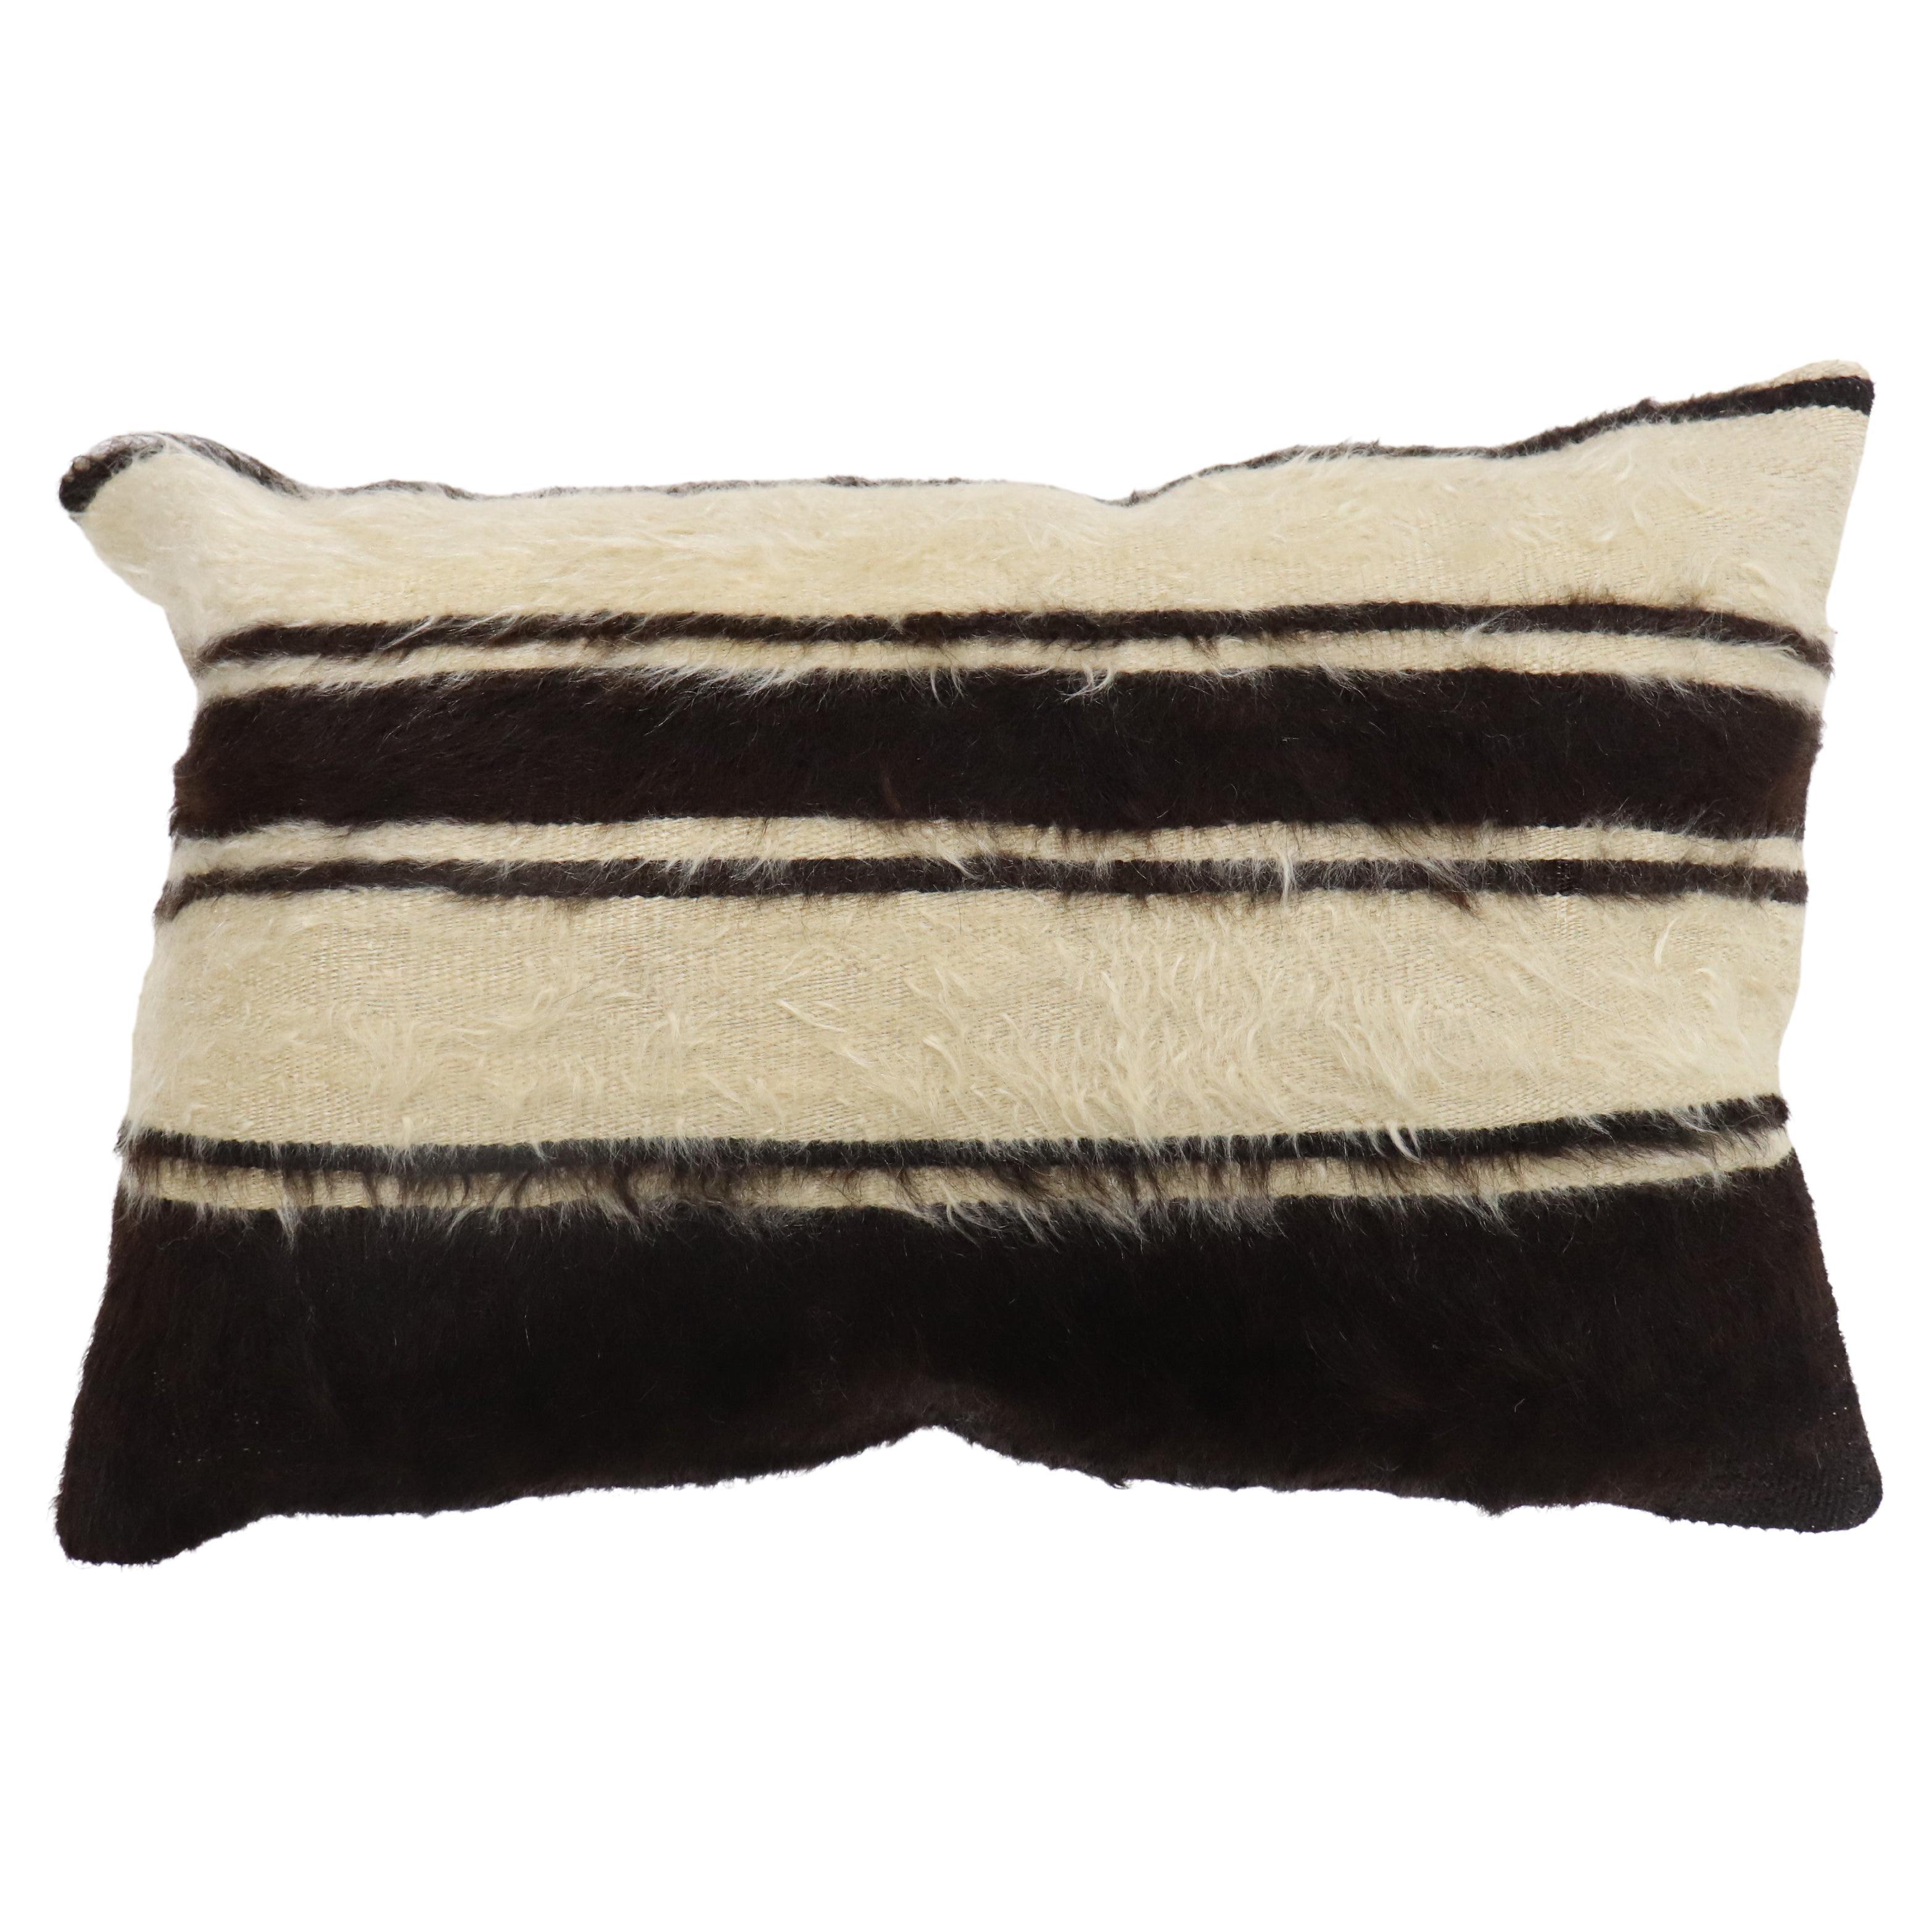 Black Turkish Mohair Rug Pillow